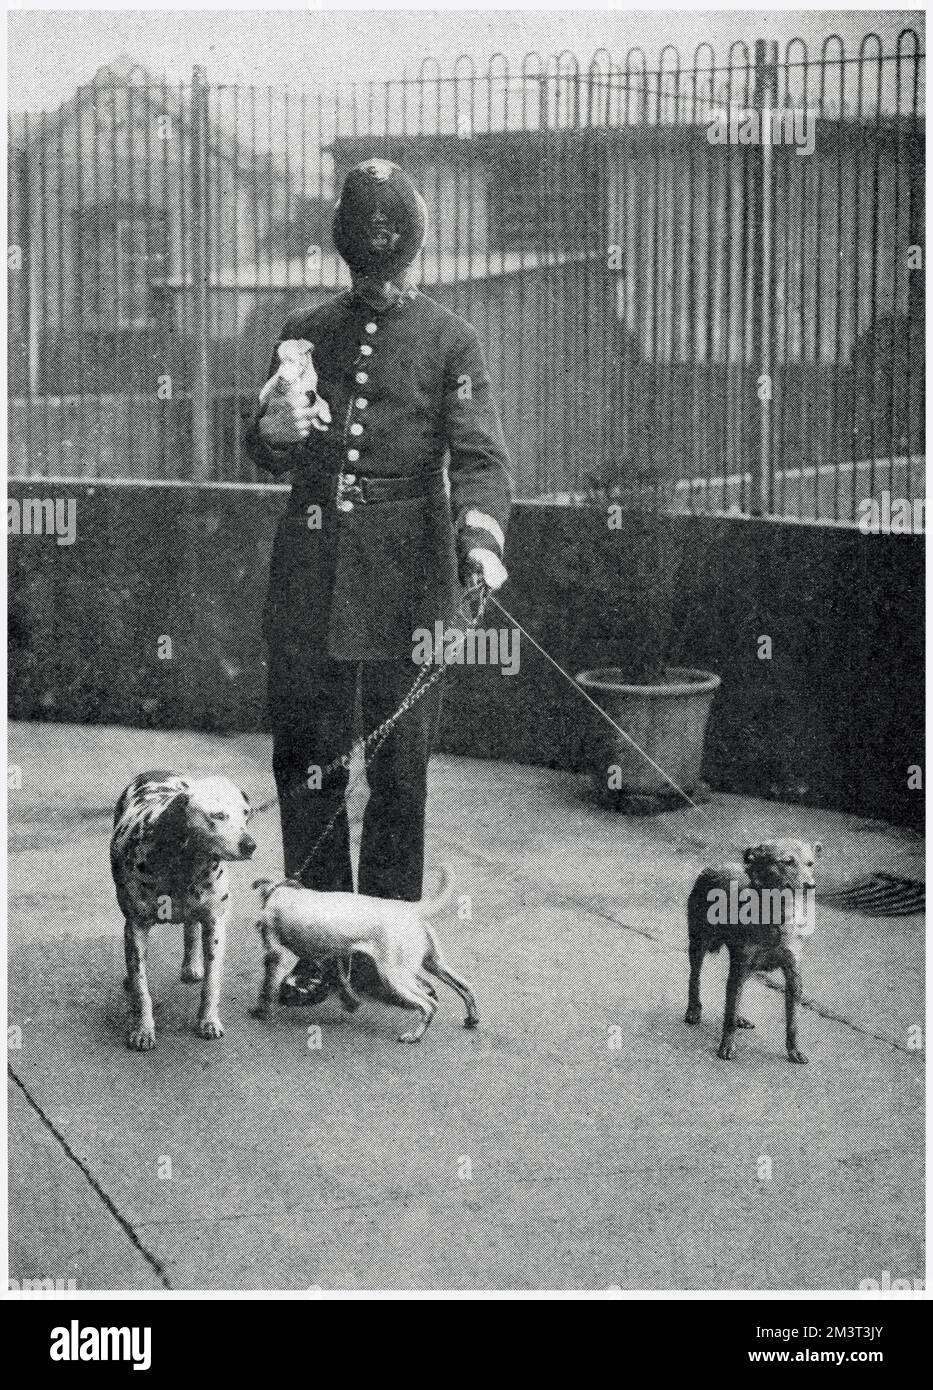 Vier Hunde, die ohne Maulkorb durch die Straßen Streifen, werden von einem Polizisten ins Hundeheim von Battersea gebracht. Aufgrund der neuen Verordnung, nach der Hunde wegen der Tollwutprävalenz nicht ohne Maulkorb sein durften. Hunde wurden von ihren Besitzern in große Mengen in den Obdachlosenheim gebracht. Datum: 1919 Stockfoto